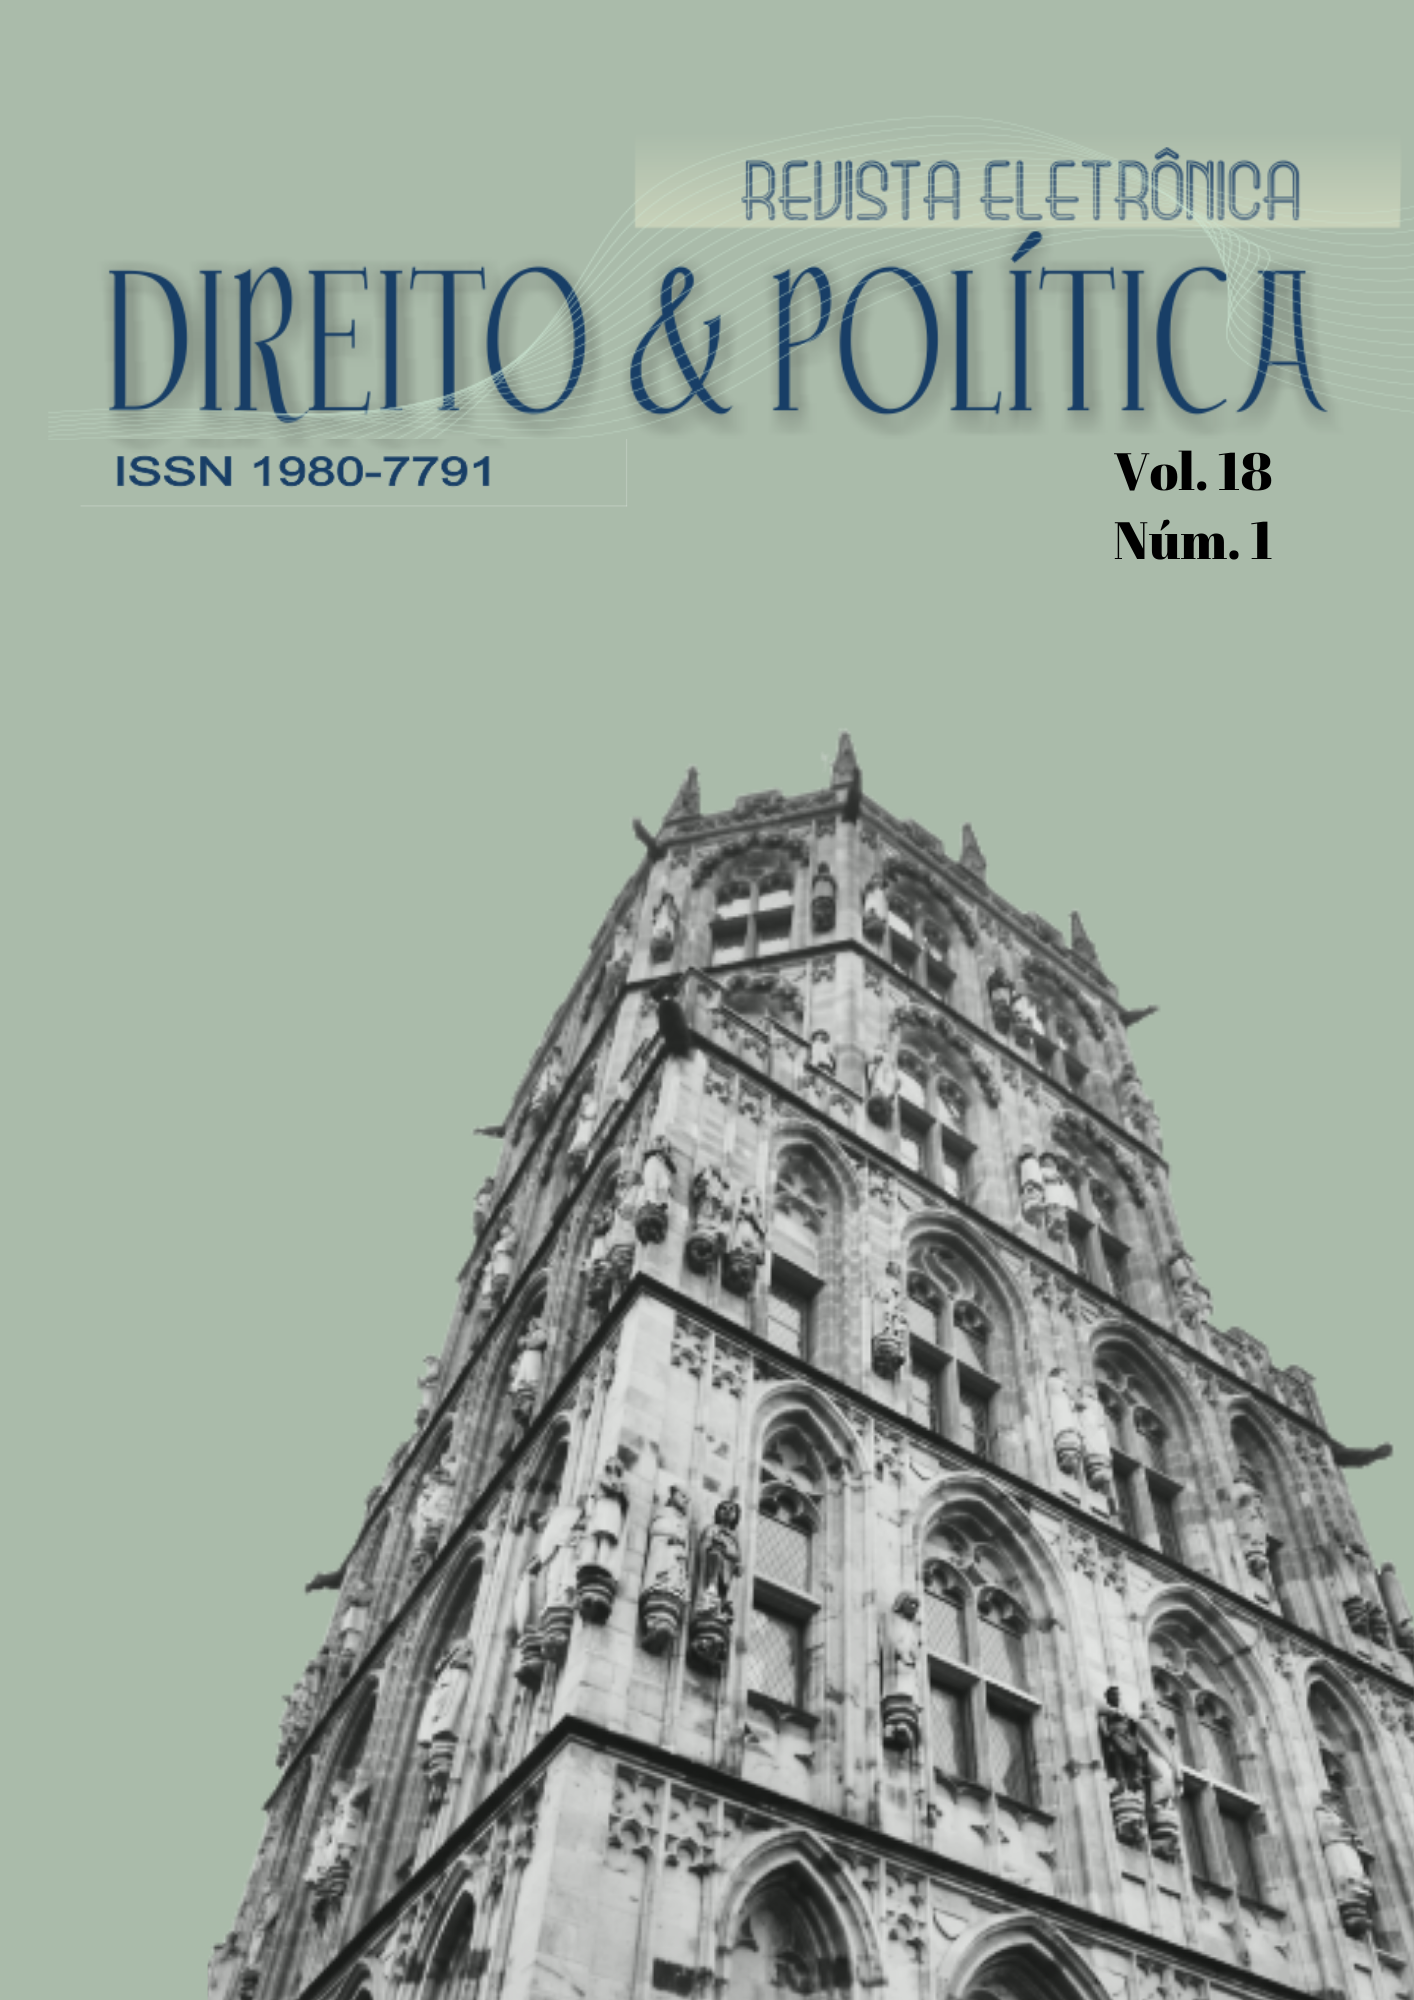 Capa da revista eletrônica Direito e Política, volume 18m número 1.